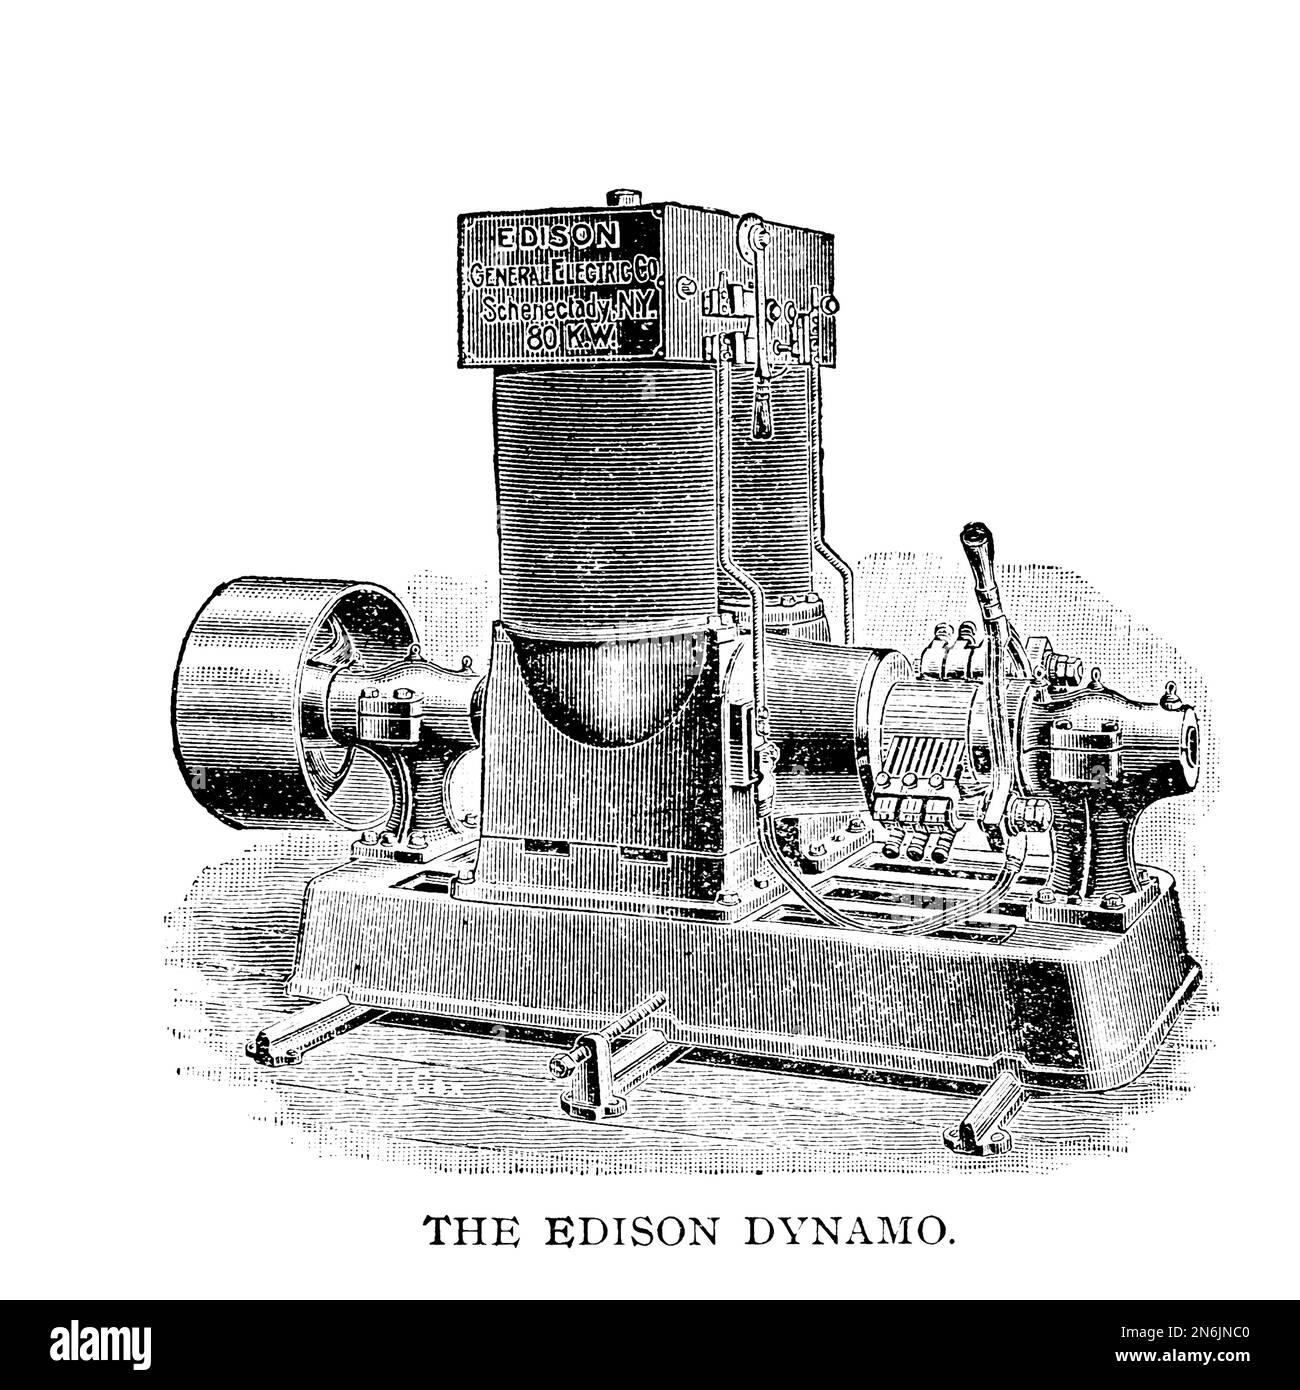 L'Edison Dynamo d'Otto Stephenson, le livre de référence illustré de test pratique, d'examen et prêt à l'emploi pour les mécaniciens fixes, de locomotive et de marine, les pompiers, les électriciens et les machinistes, afin d'obtenir la licence de mécanicien de vapeur publiée à Chicago, W. G. Kraft en 1891 Banque D'Images